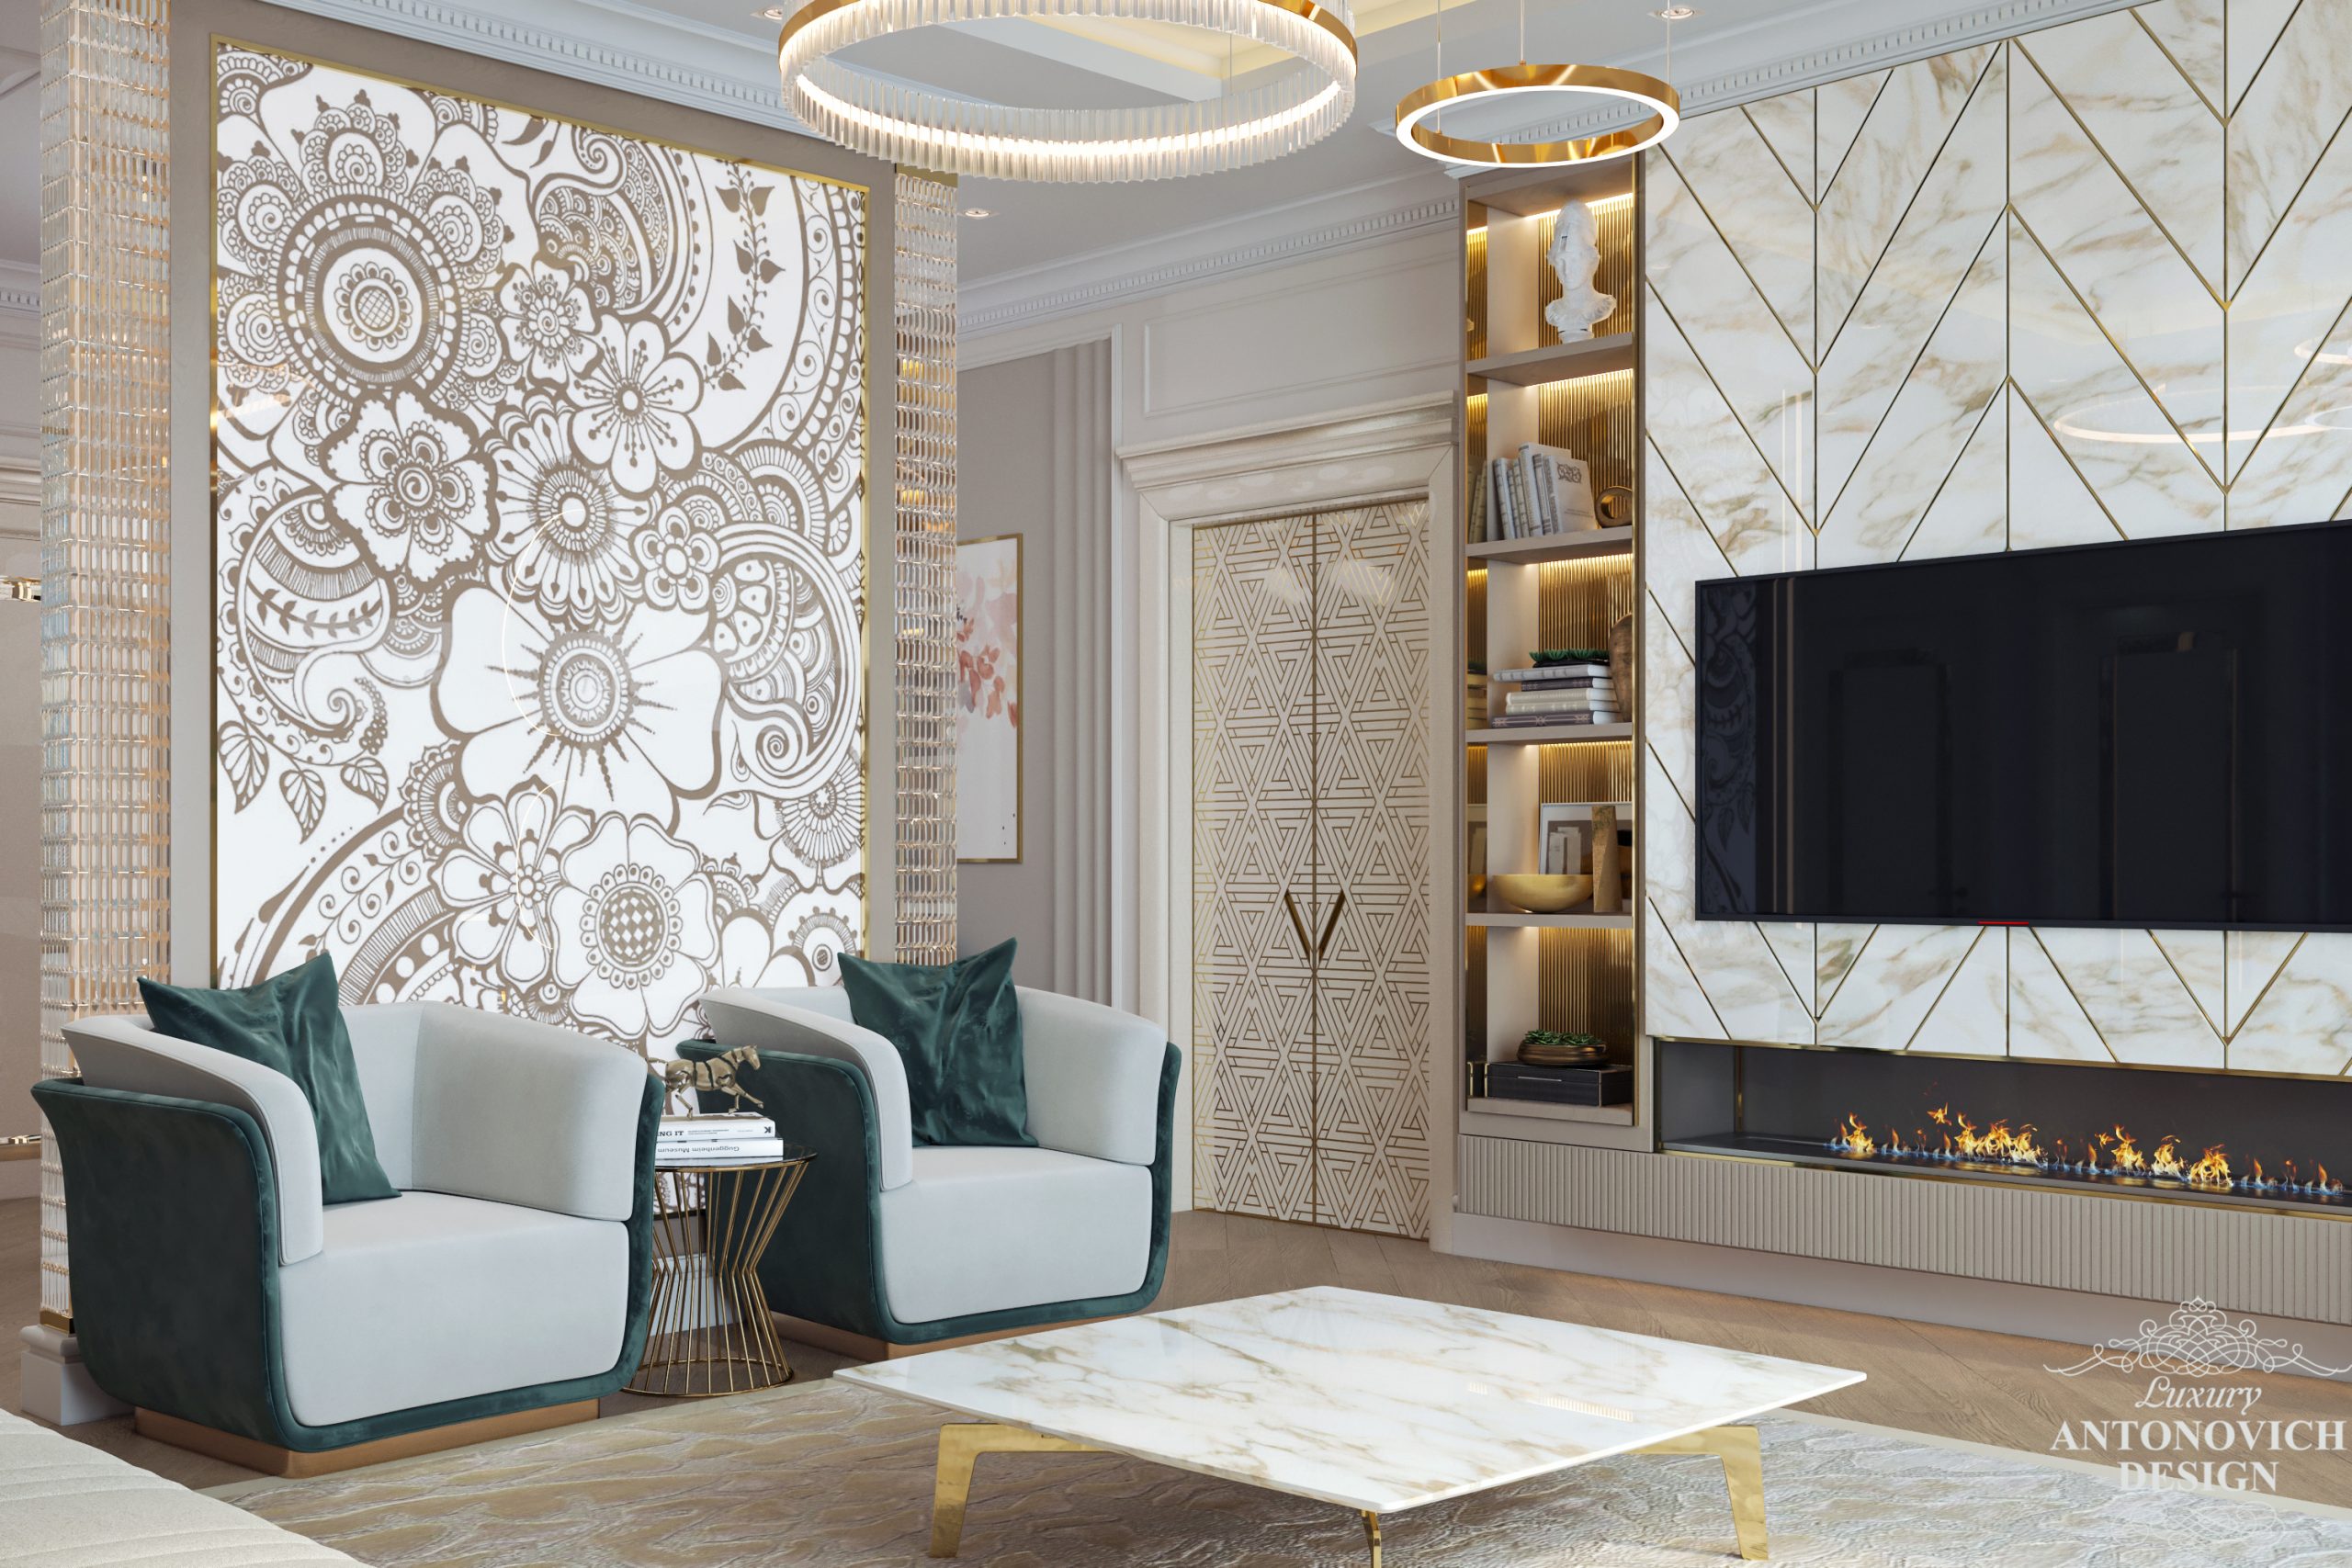 Утонченный декор из мрамора и латуни в интерьере роскошной квартире премиум класса